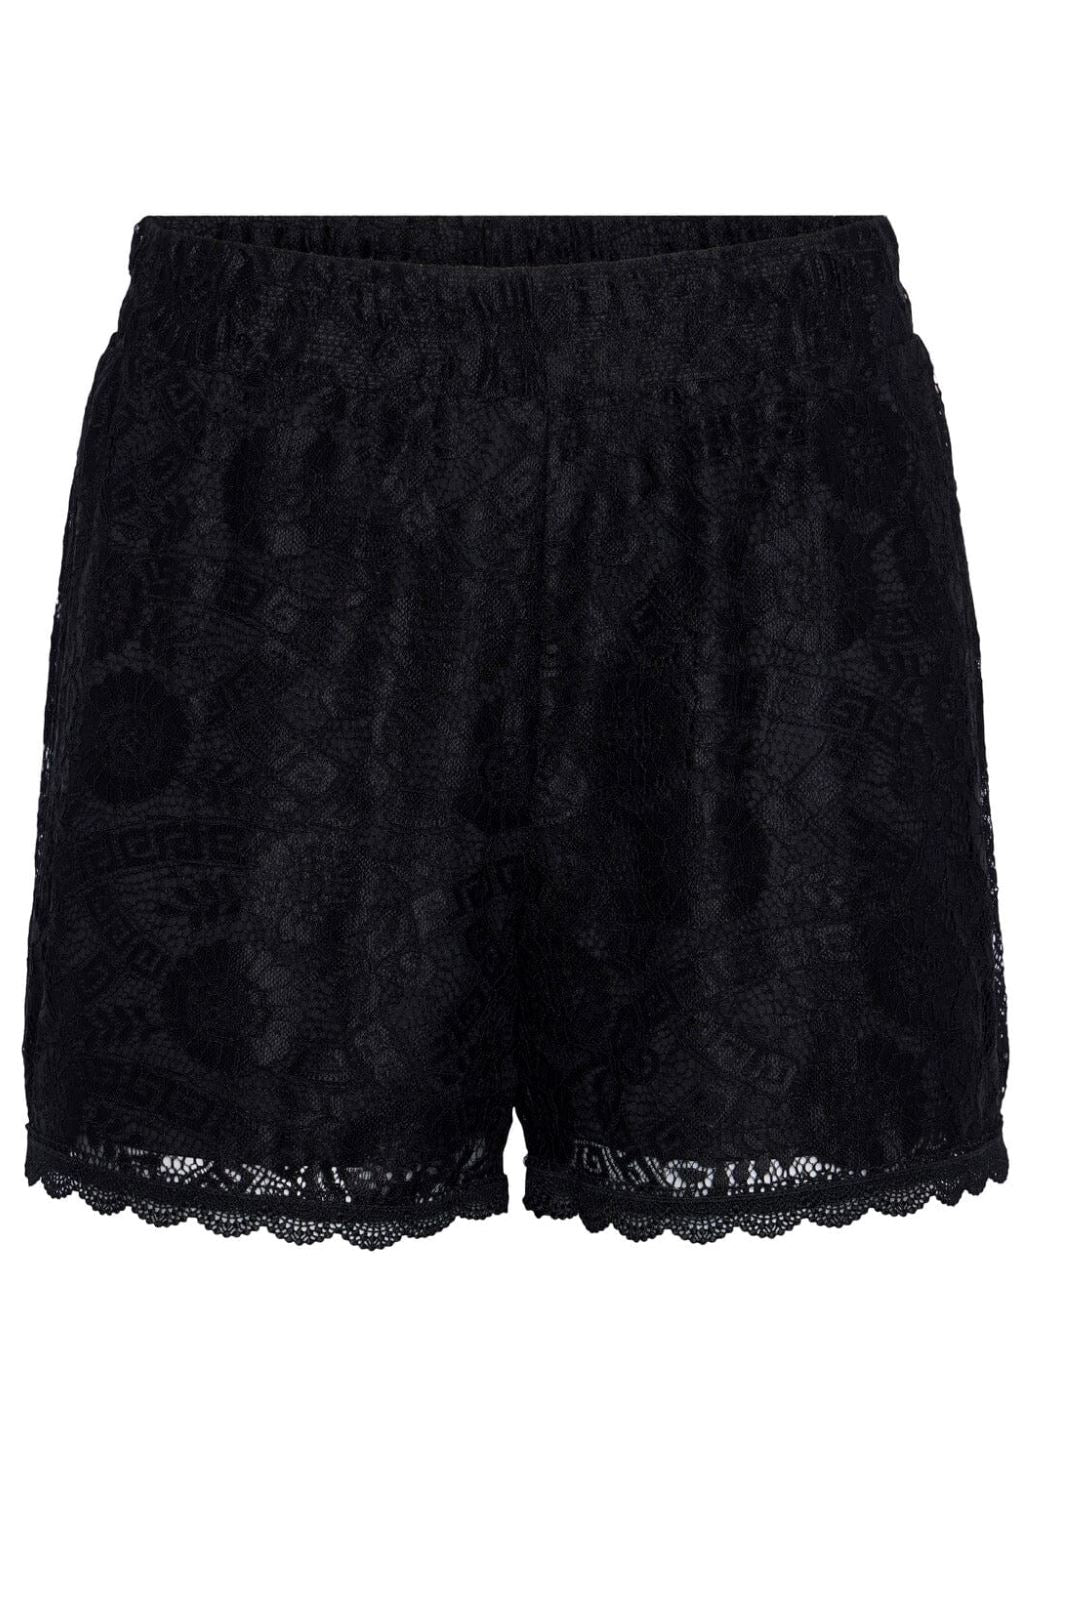 Pieces - Pcolline Shorts - 4463442 Black Shorts 